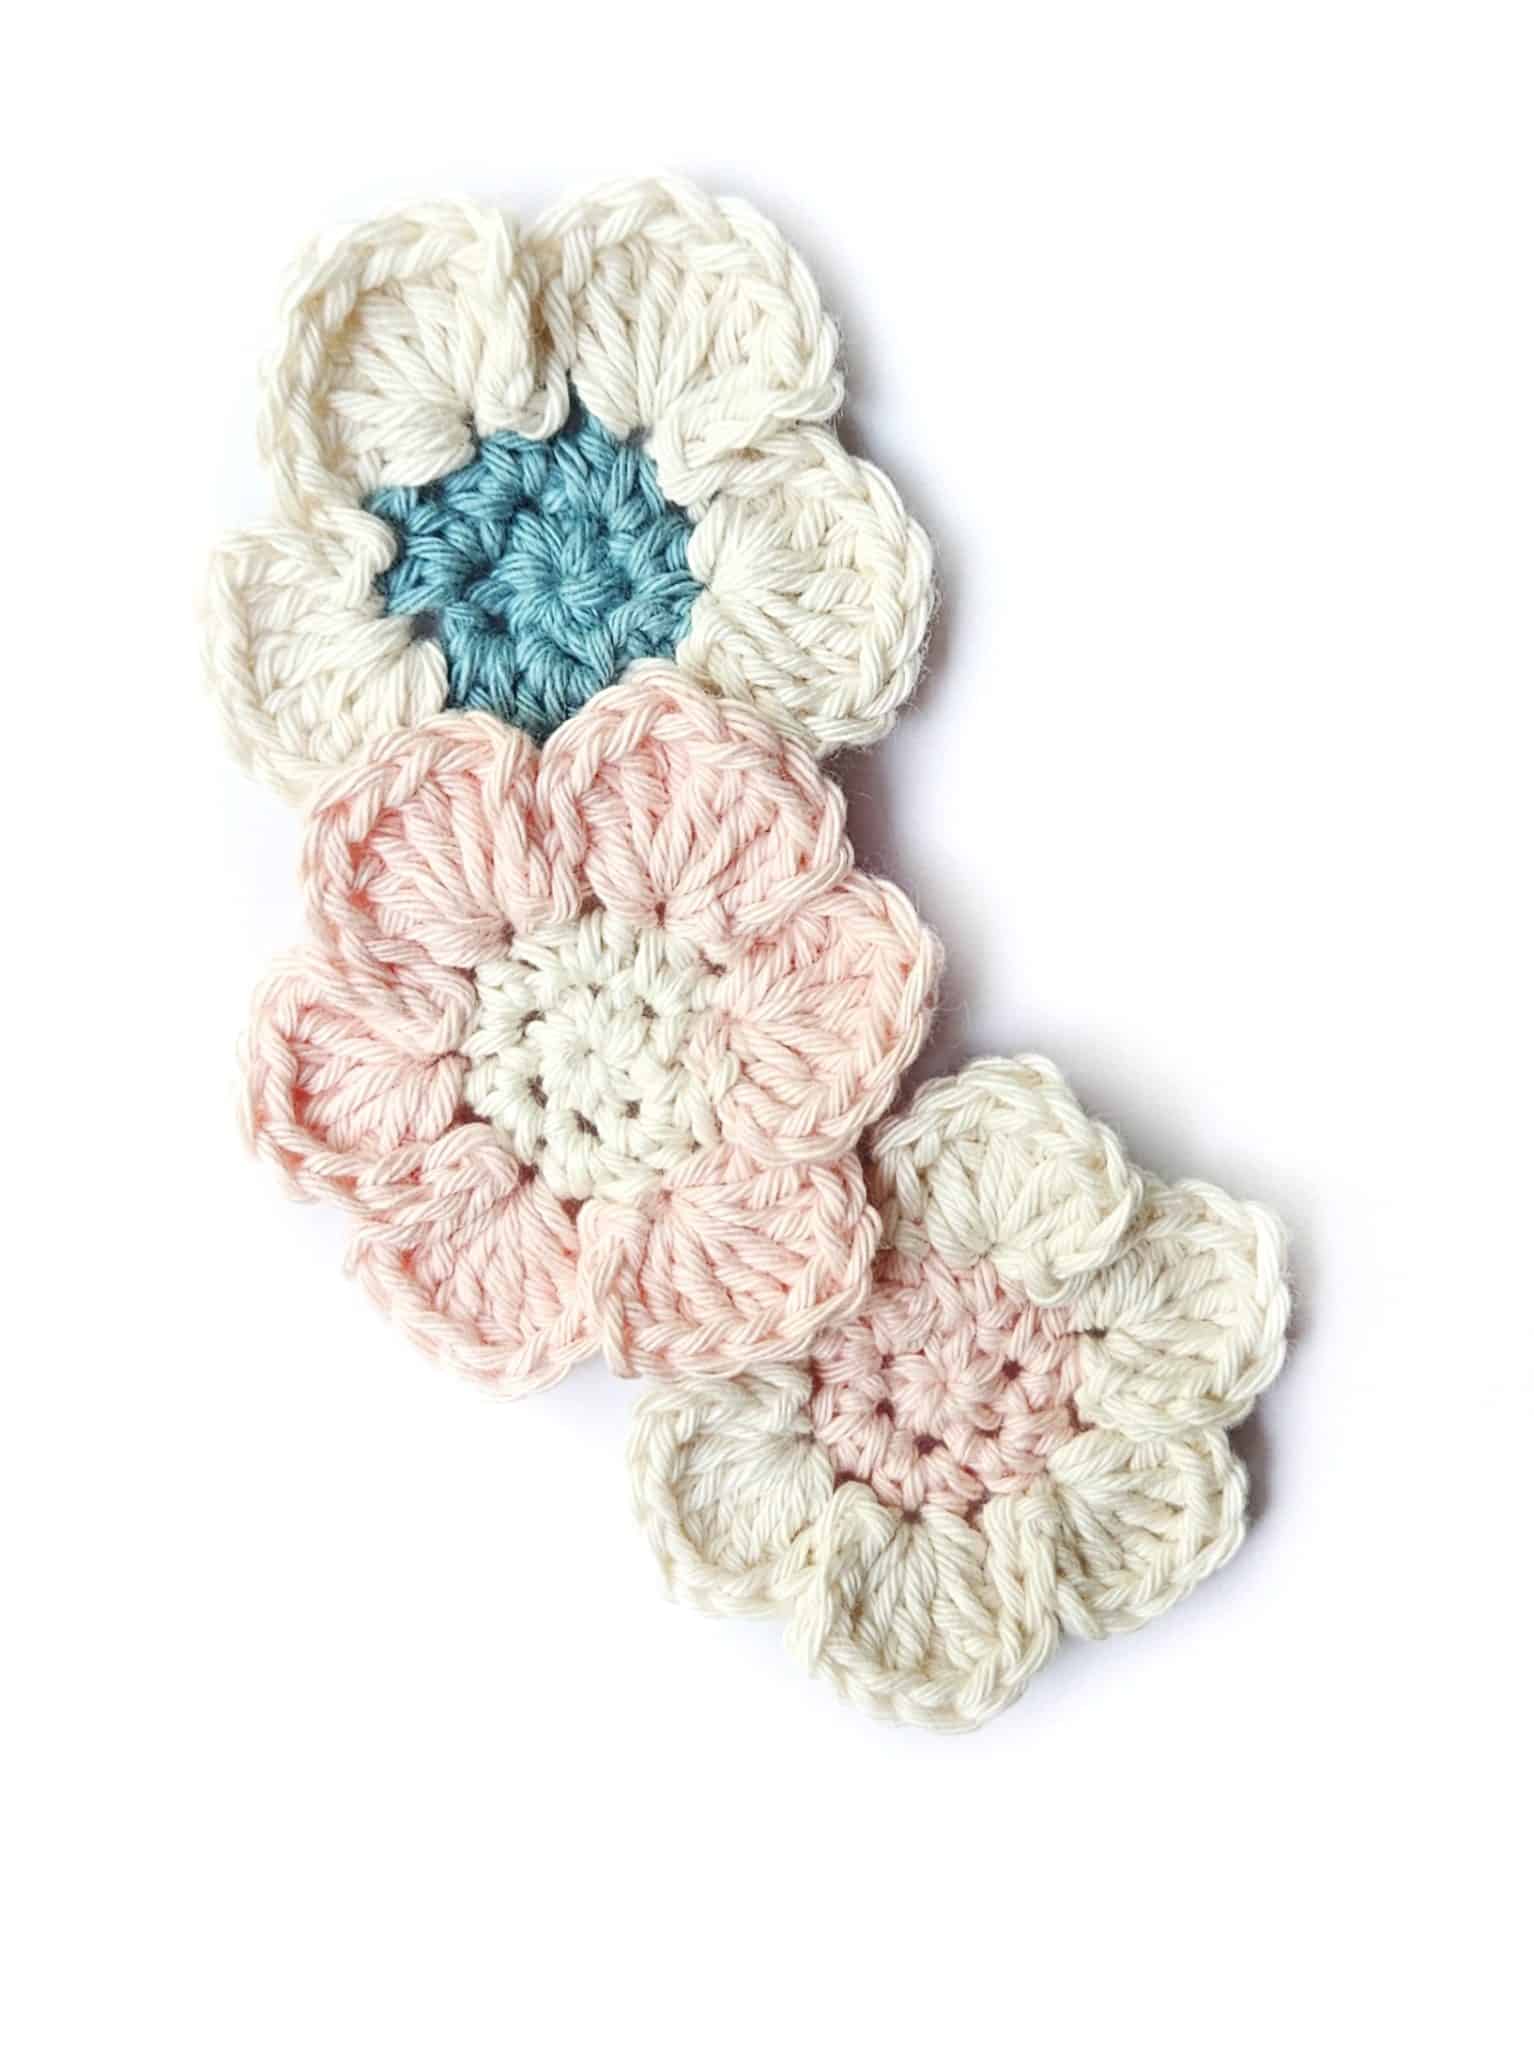 Easy Crochet Flower Pattern - Crochet 365 Knit Too